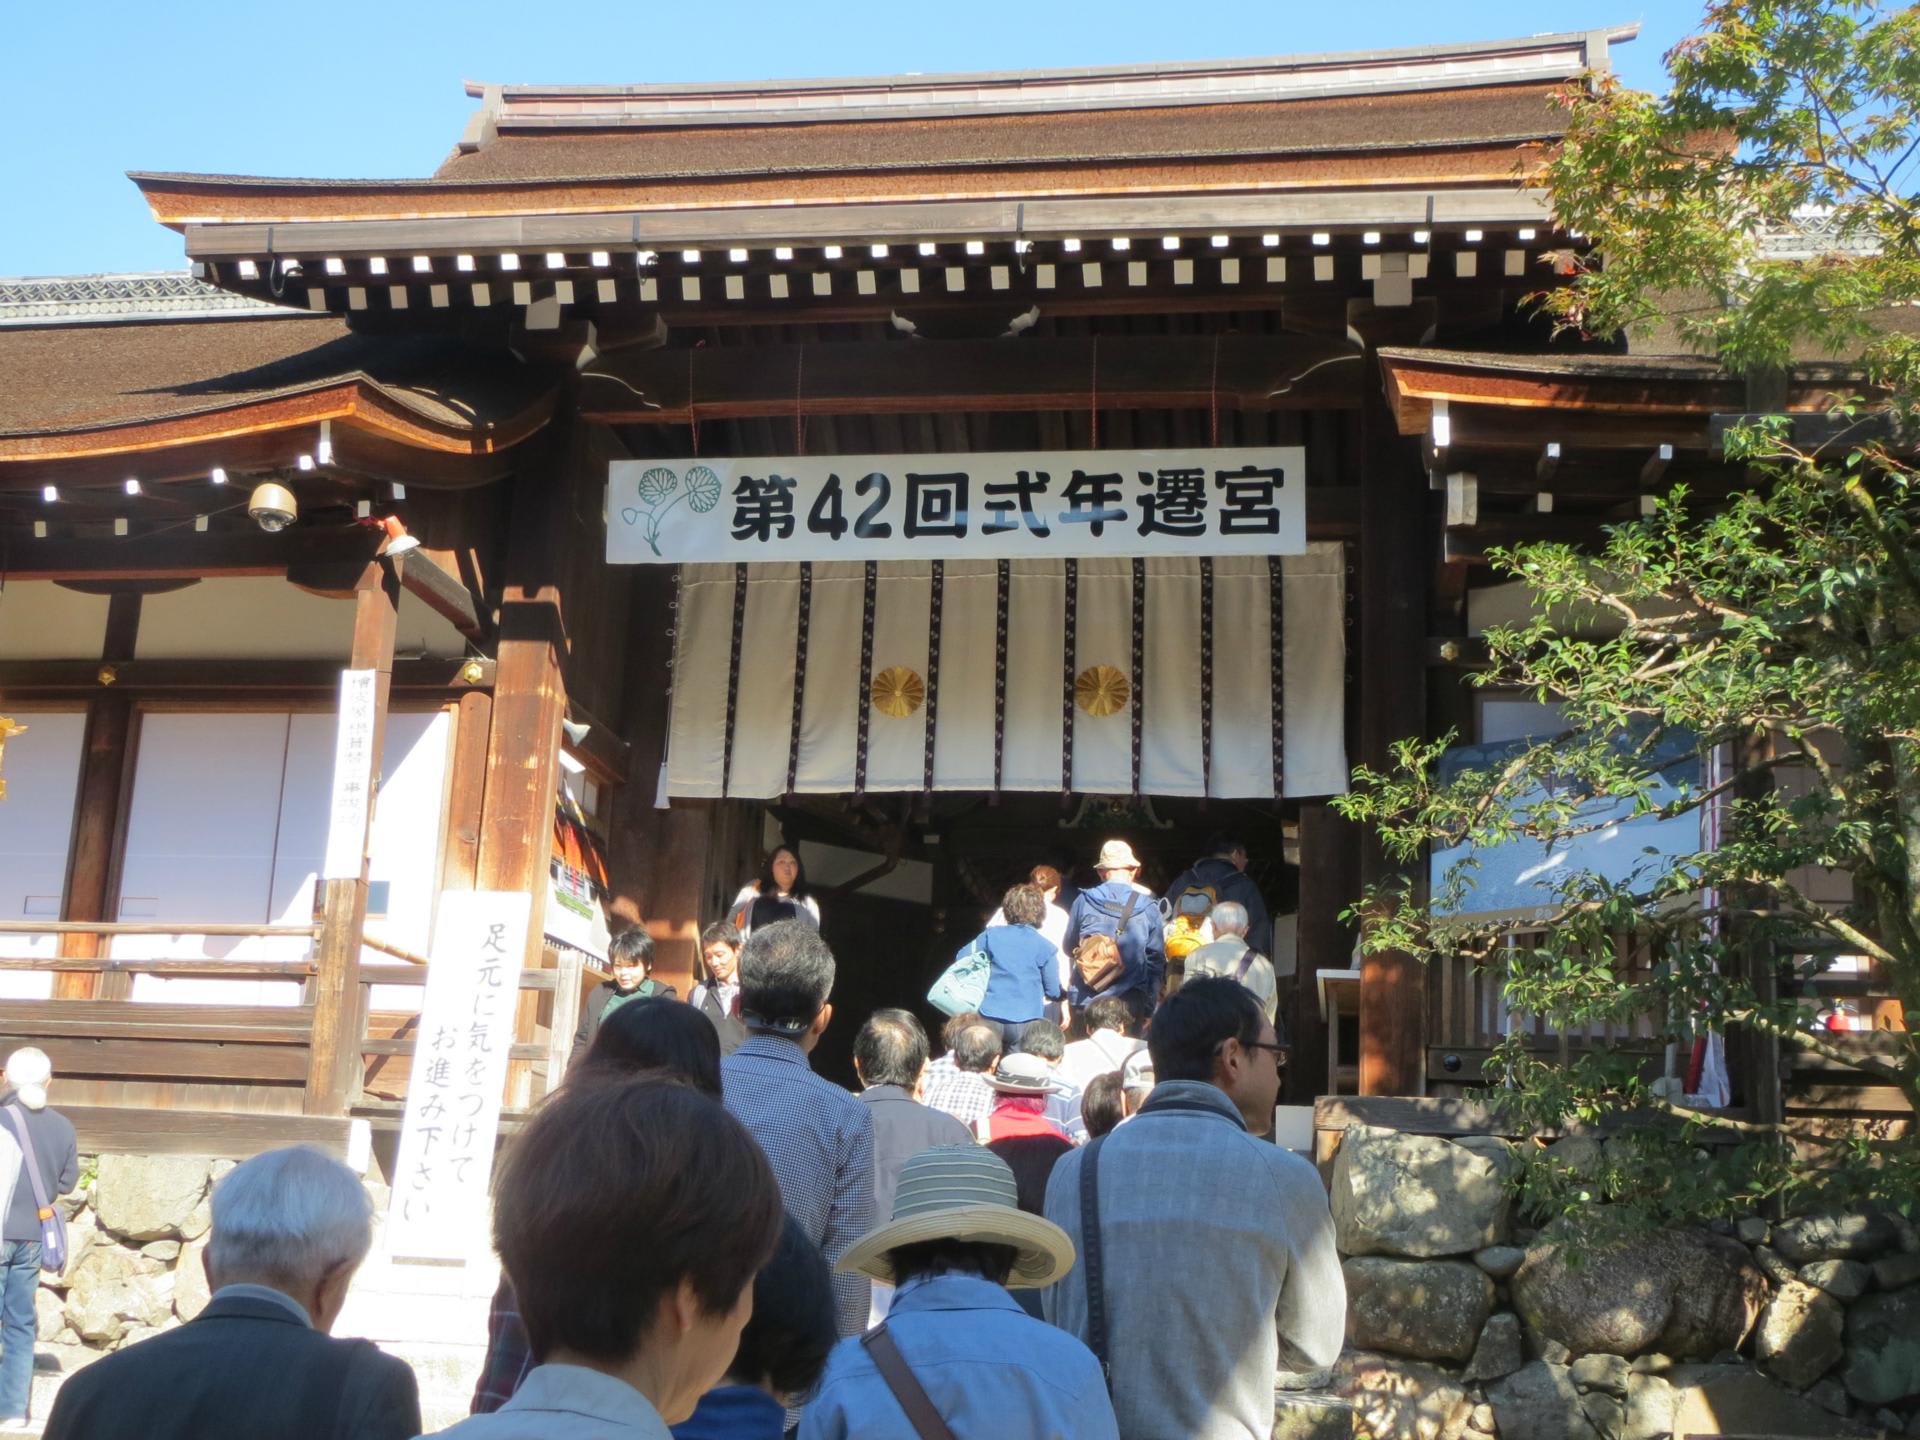 上賀茂神社式年遷宮と奉祝行事 京のおさんぽ